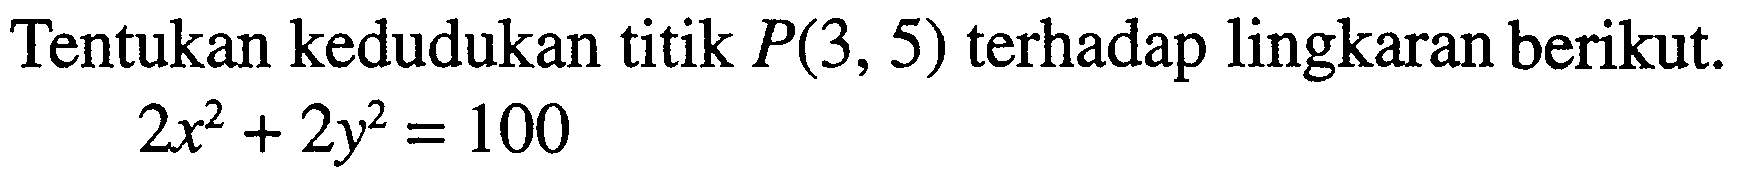 Tentukan kedudukan titik P(3,5) terhadap lingkaran berikut. 2x^2+2y^2=100 